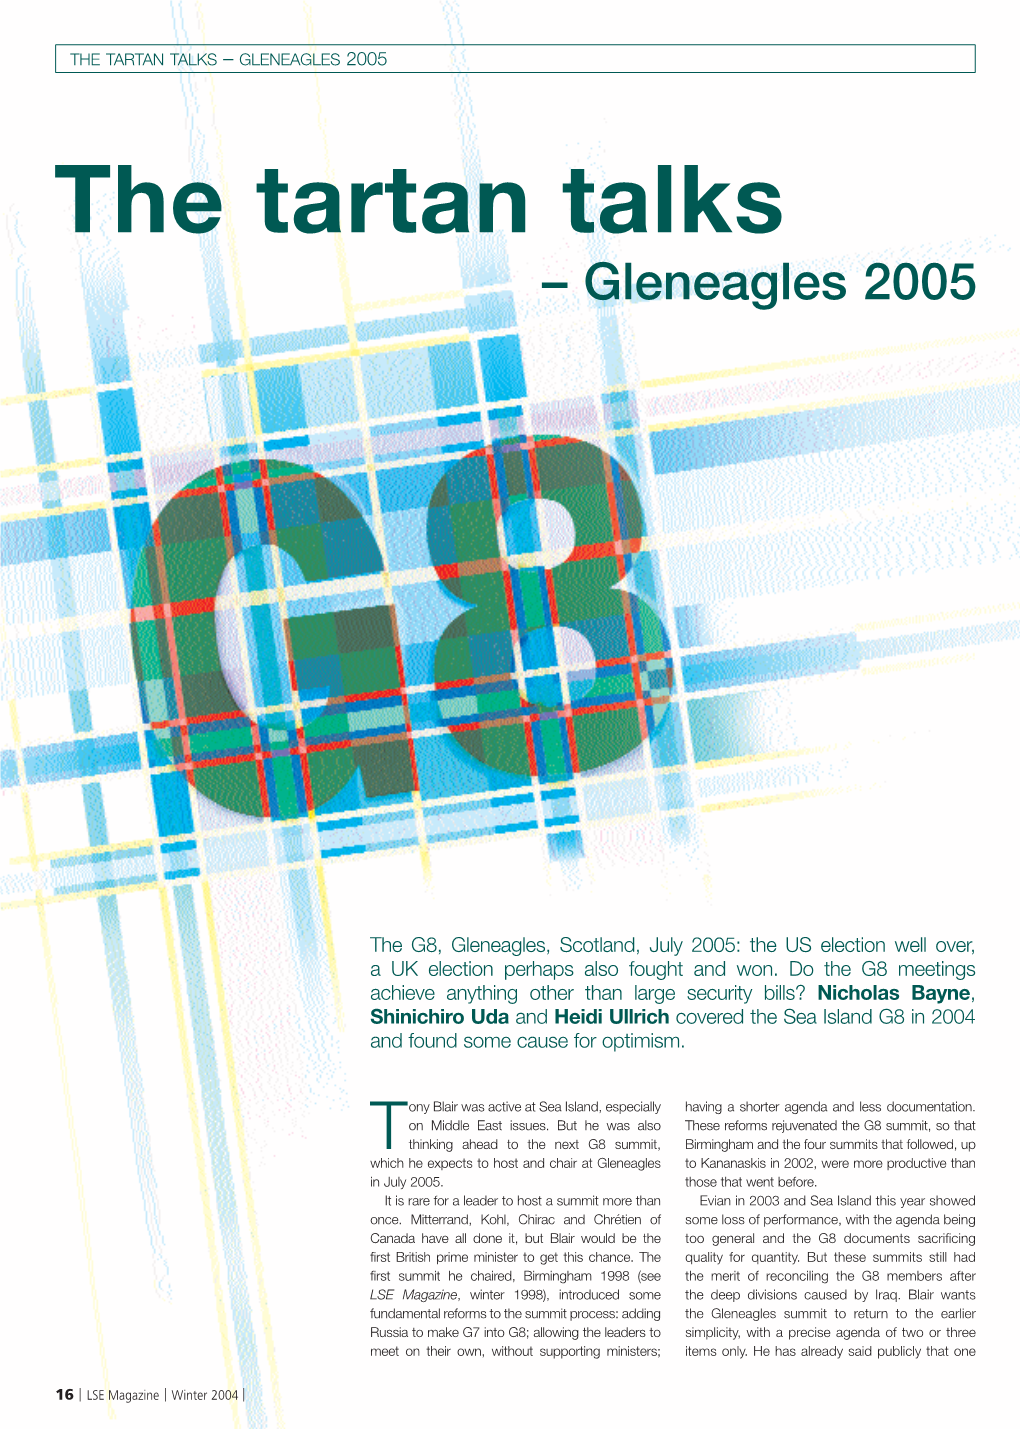 The Tartan Talks: Gleneagles 2005